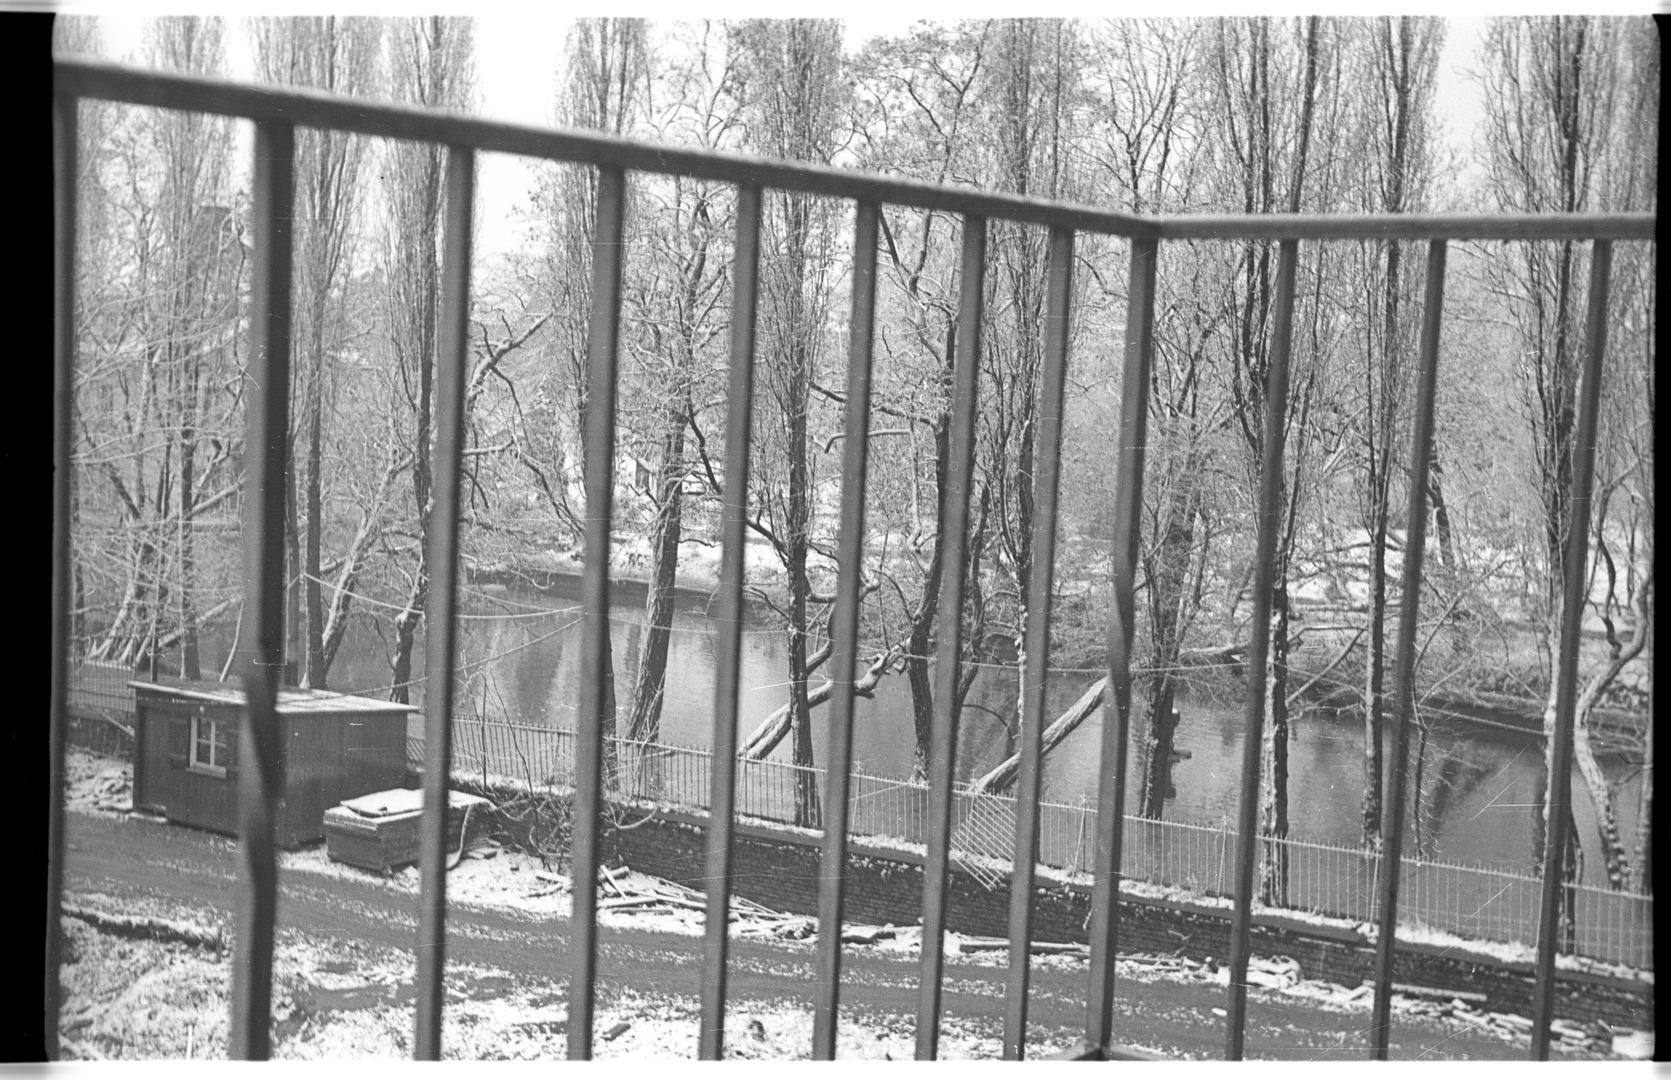 Blick zum Teich am Weißhaus-Schloss, vom Balkon der Wohnung in der Luxemburger Straße 197 aus fotografiert. Dort wohnte Zimmermann mit seiner Familie zwischen 1955 und1965. Köln 1955